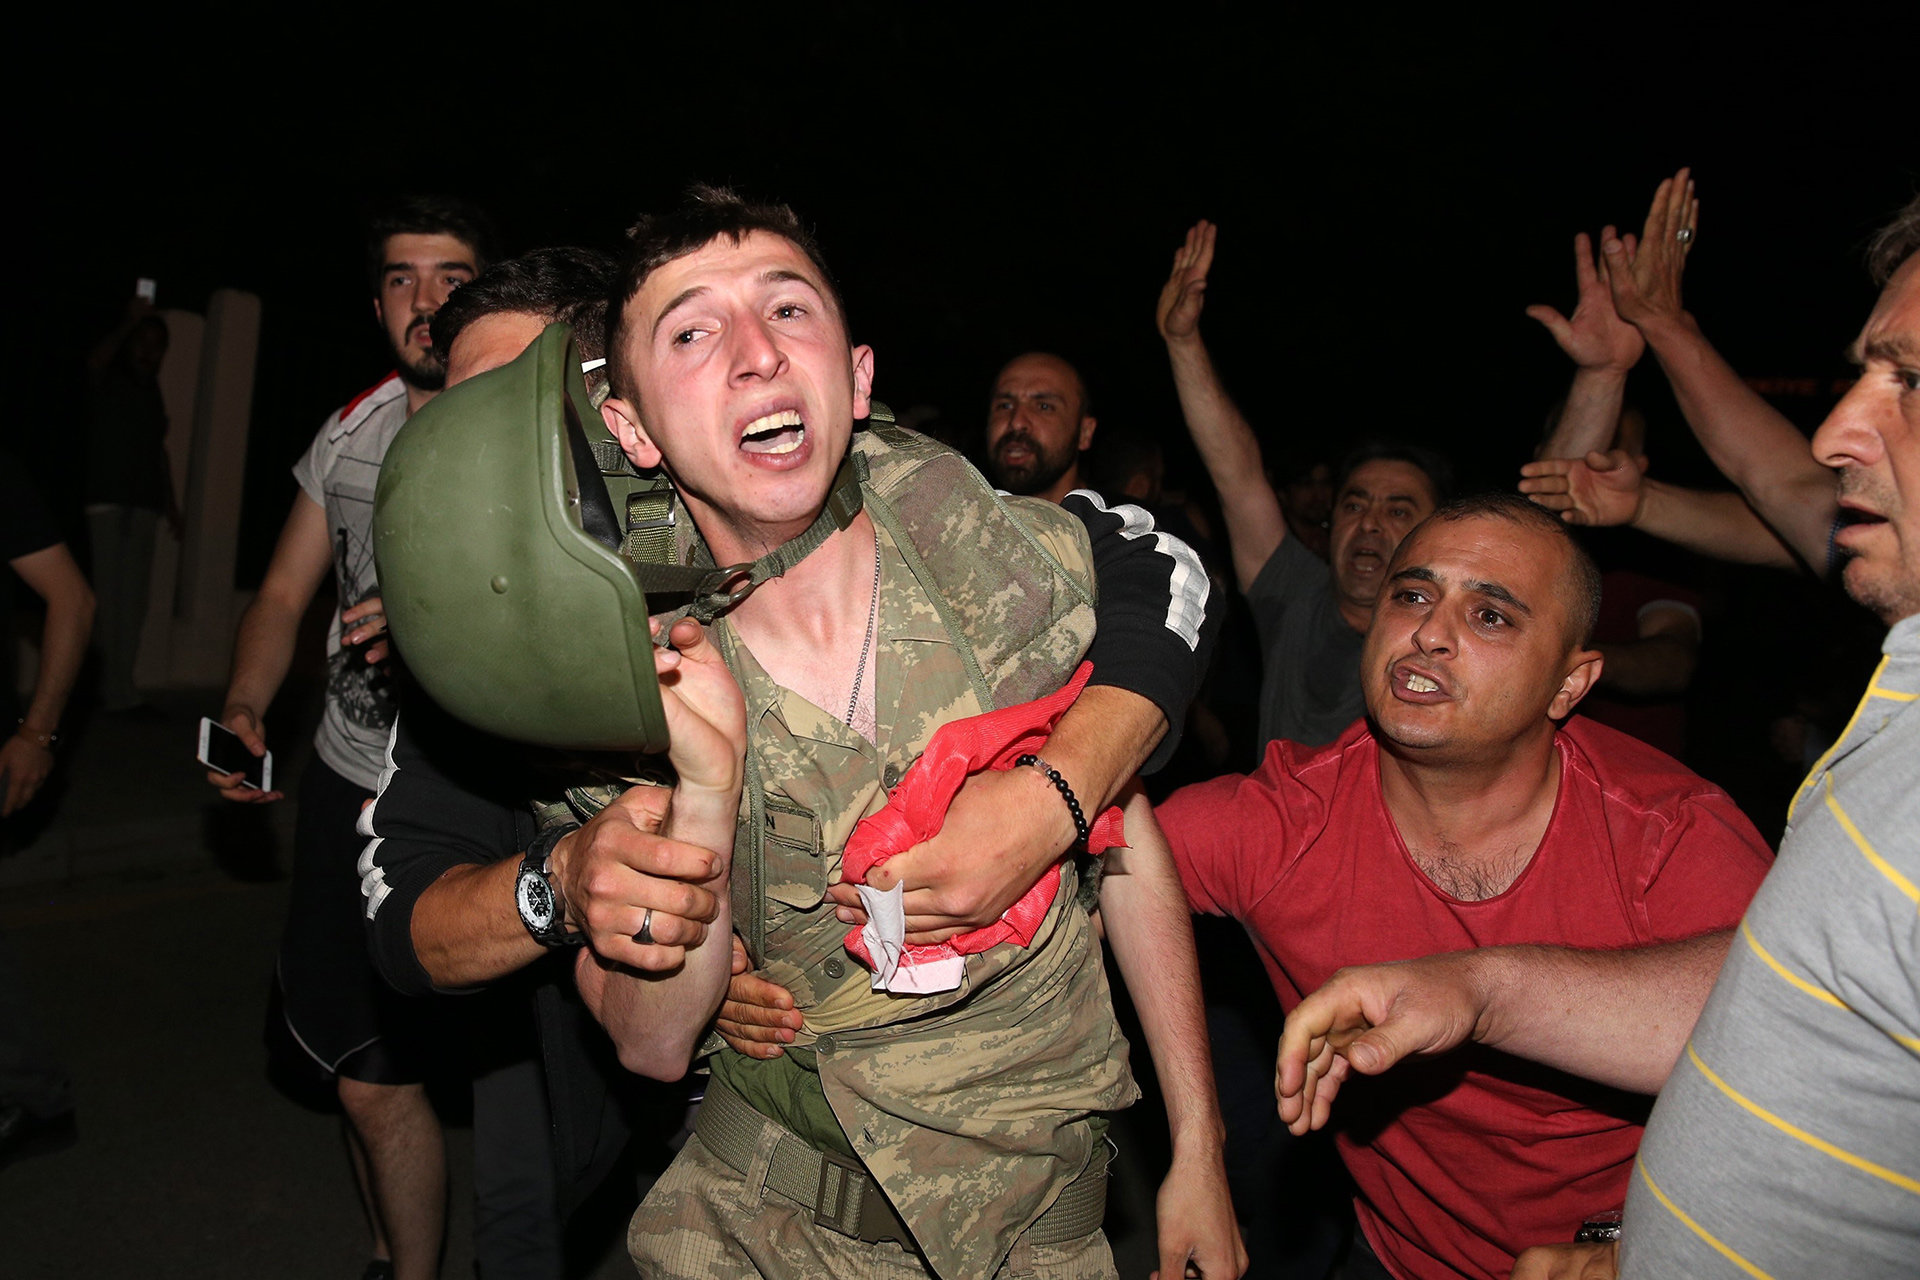 Türkische Männer kämpfen mit Soldaten um Militärputsch zu verhindern  (Foto: picture alliance / abaca)